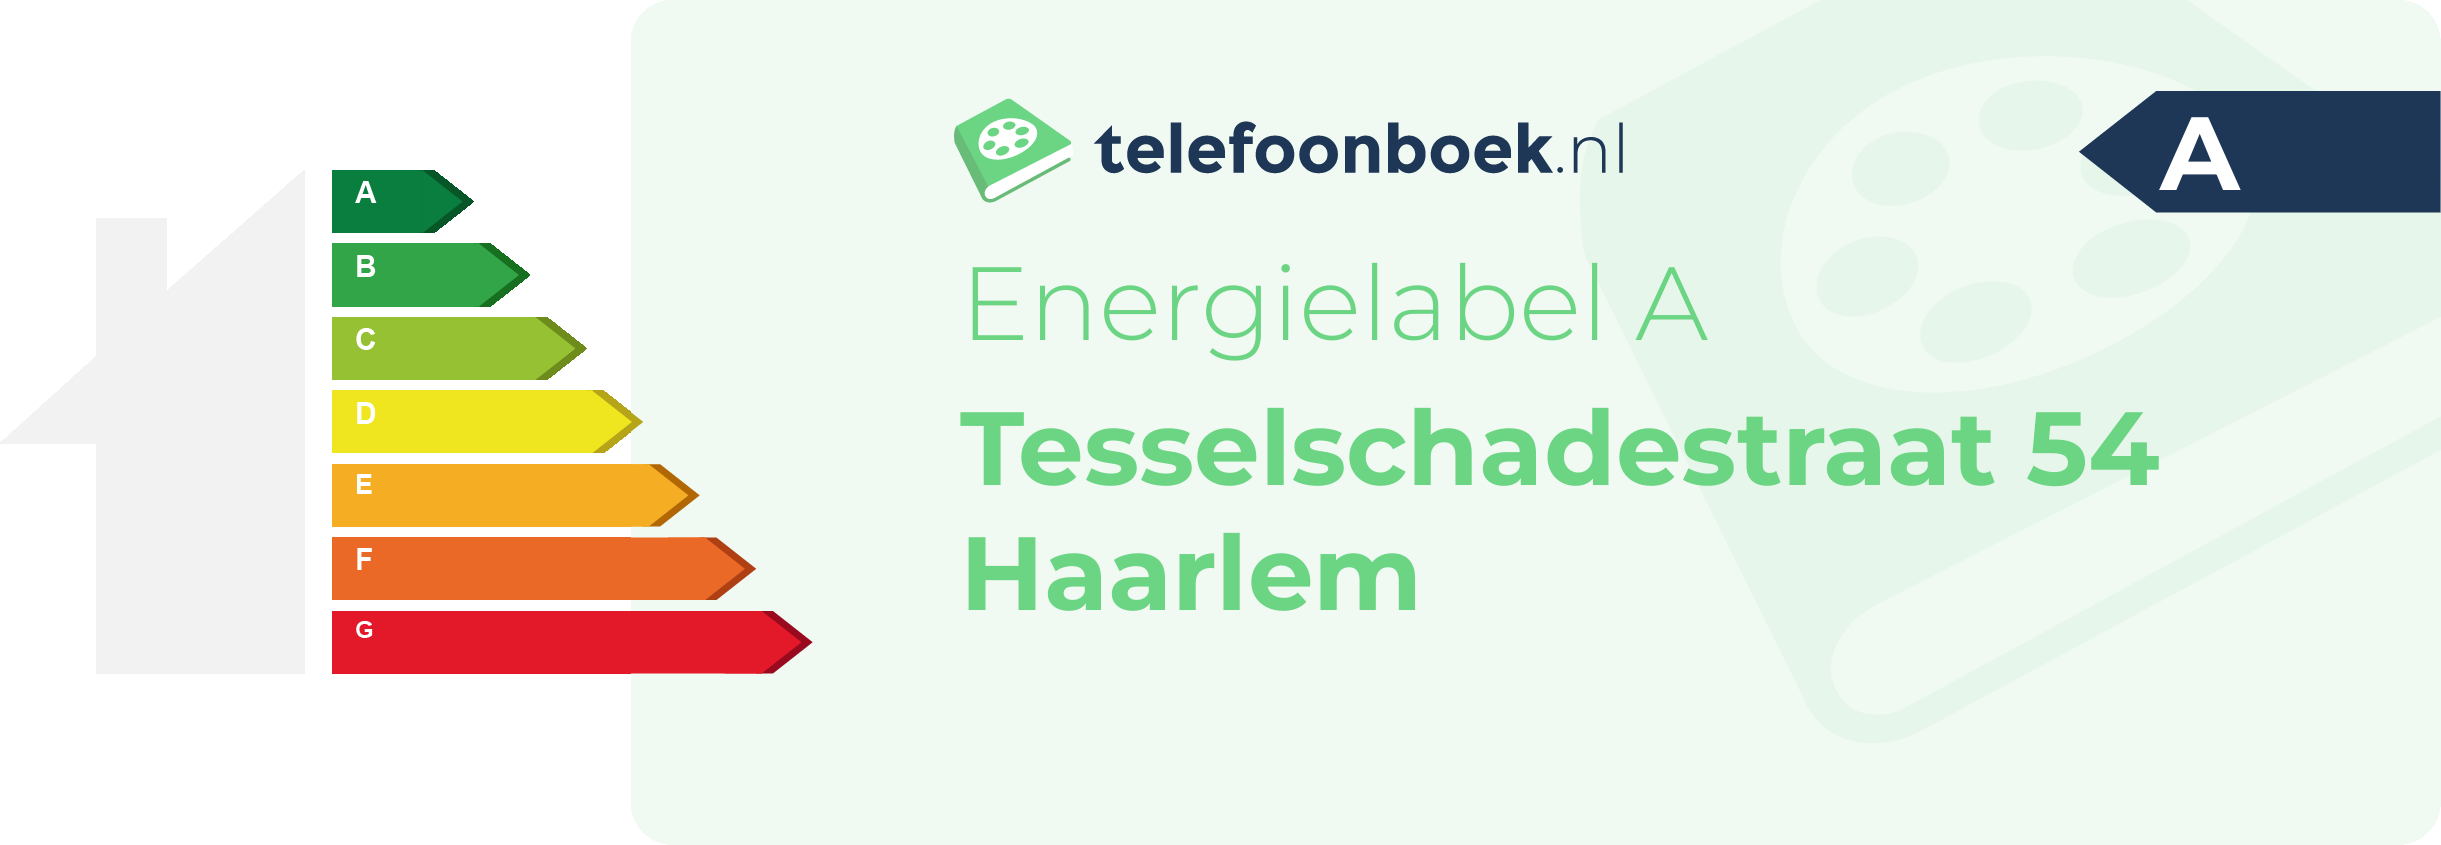 Energielabel Tesselschadestraat 54 Haarlem